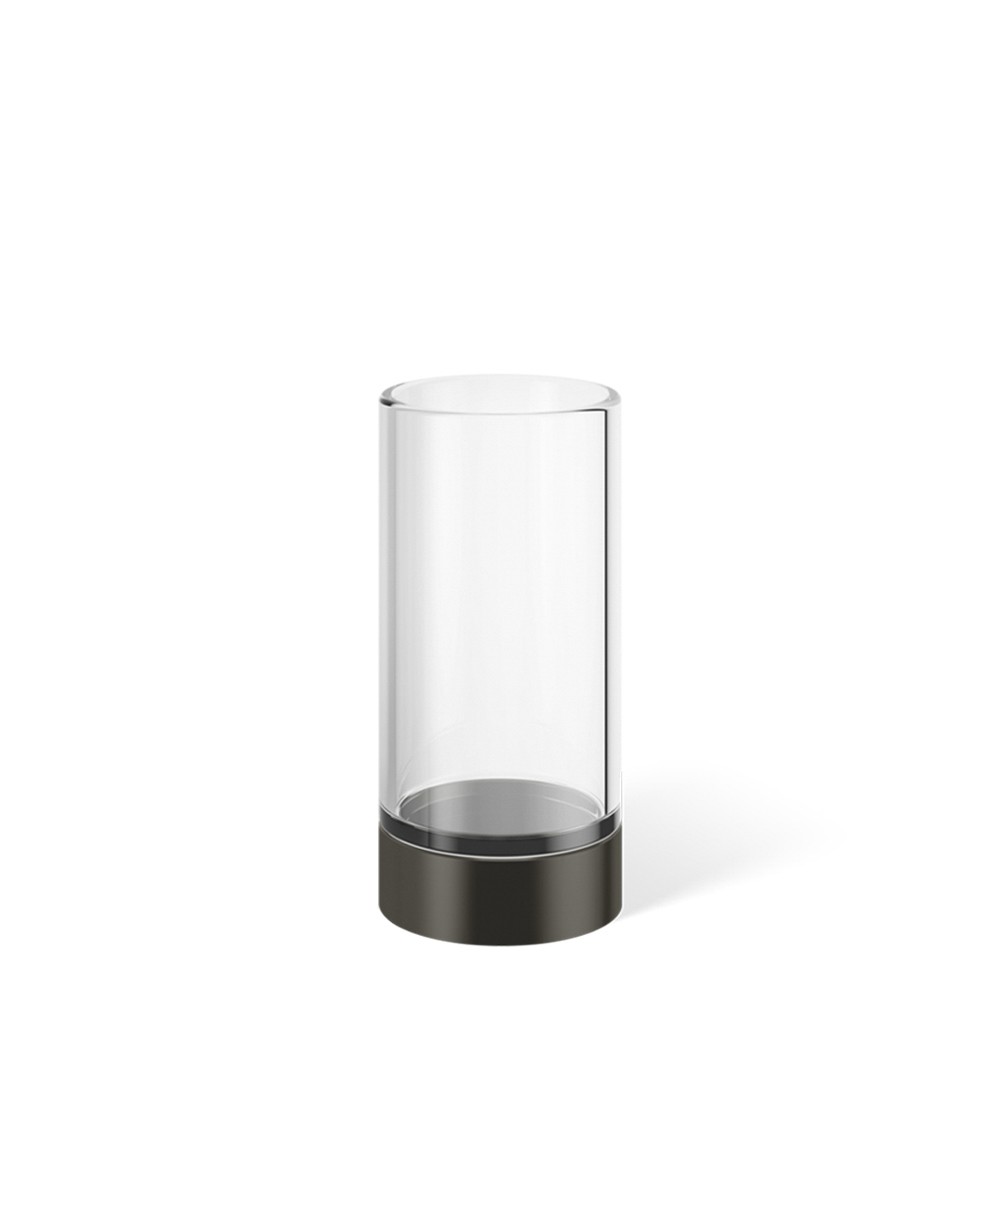 Hier abgebildet ist ein Mundglas von Decor Walther – im Onlineshop RAUM concept store